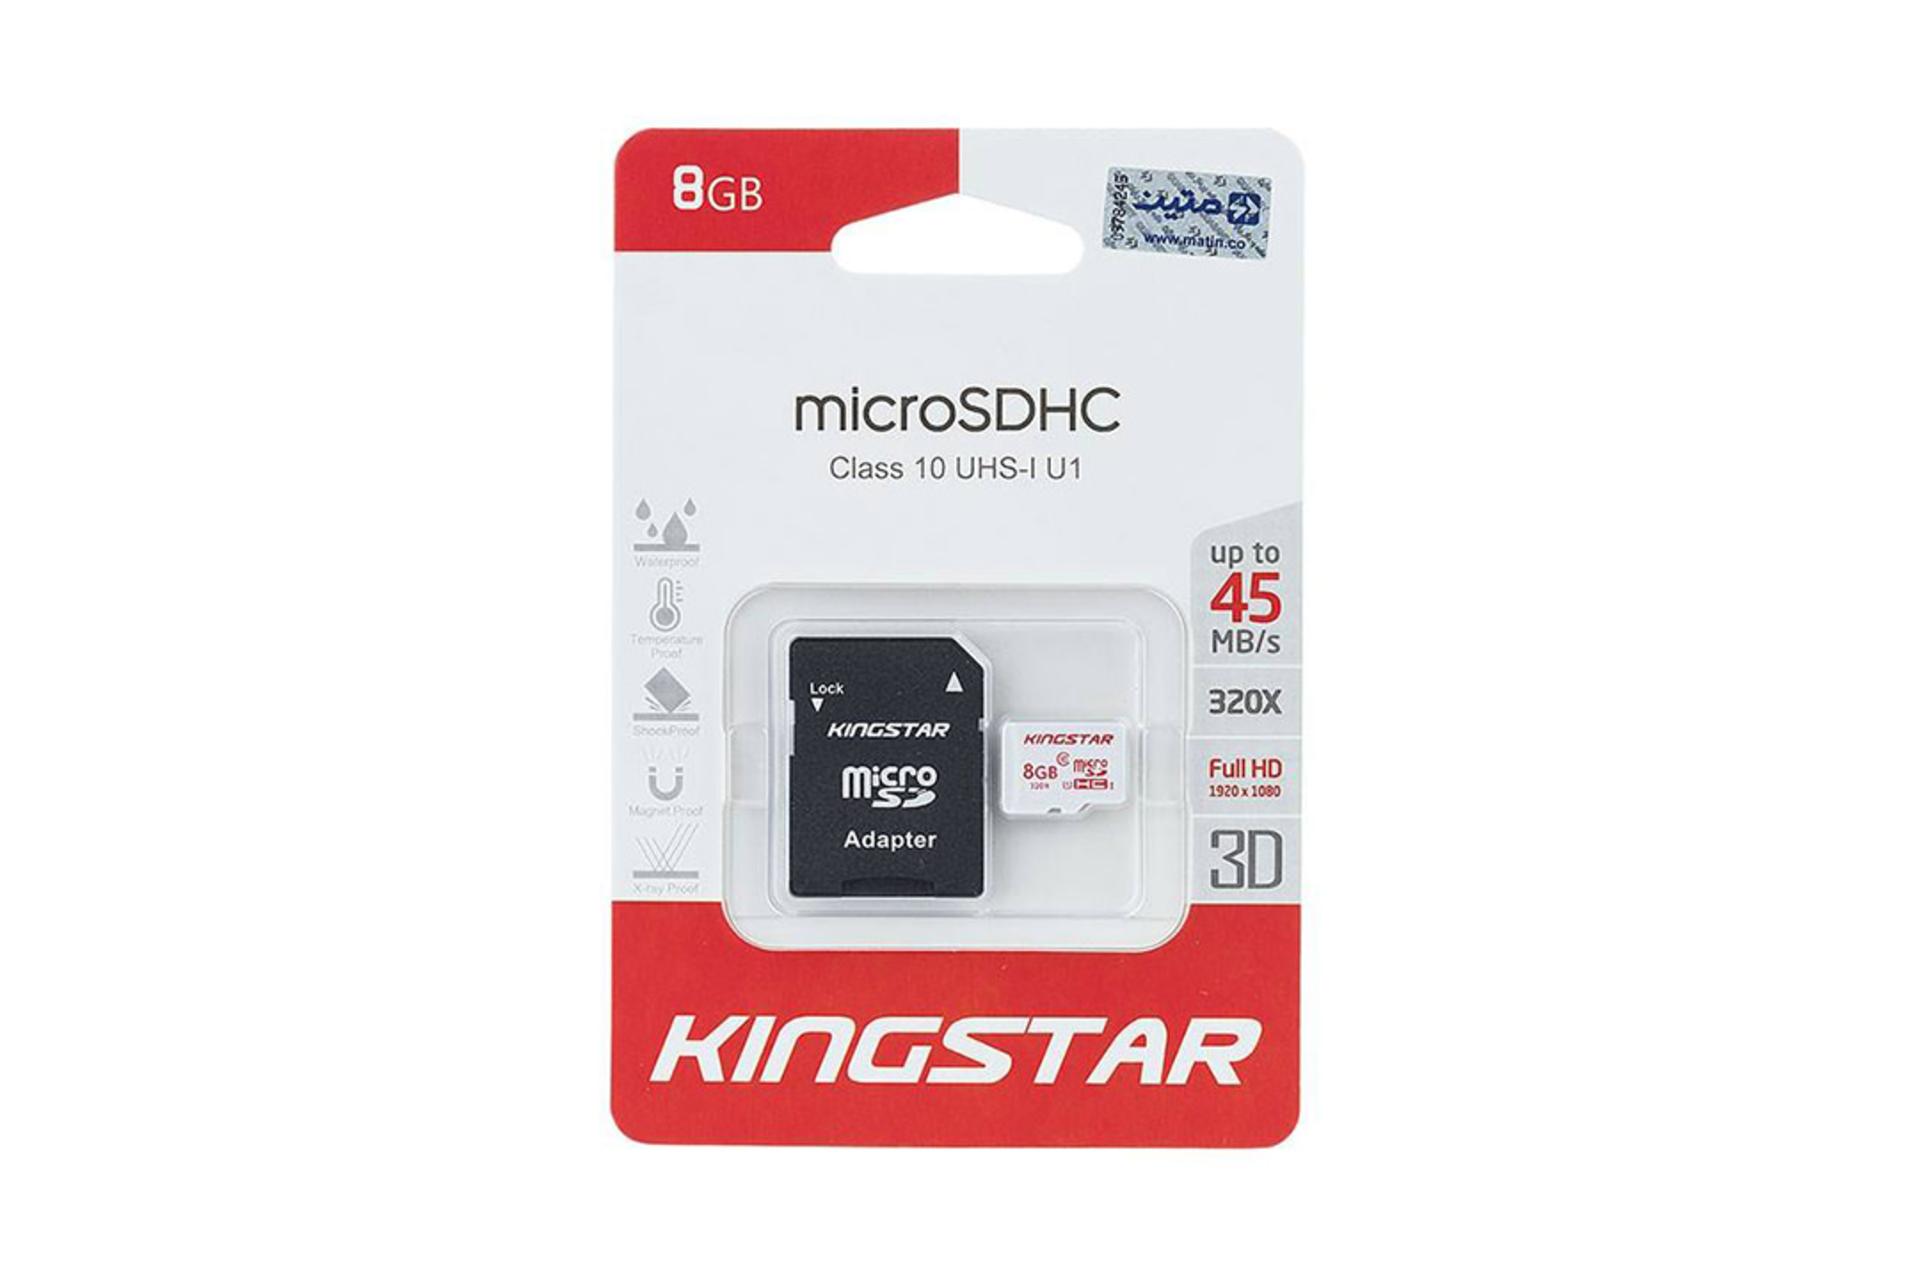 مرجع متخصصين ايران Kingstar microSDHC Class 10 UHS-I U1 8GB